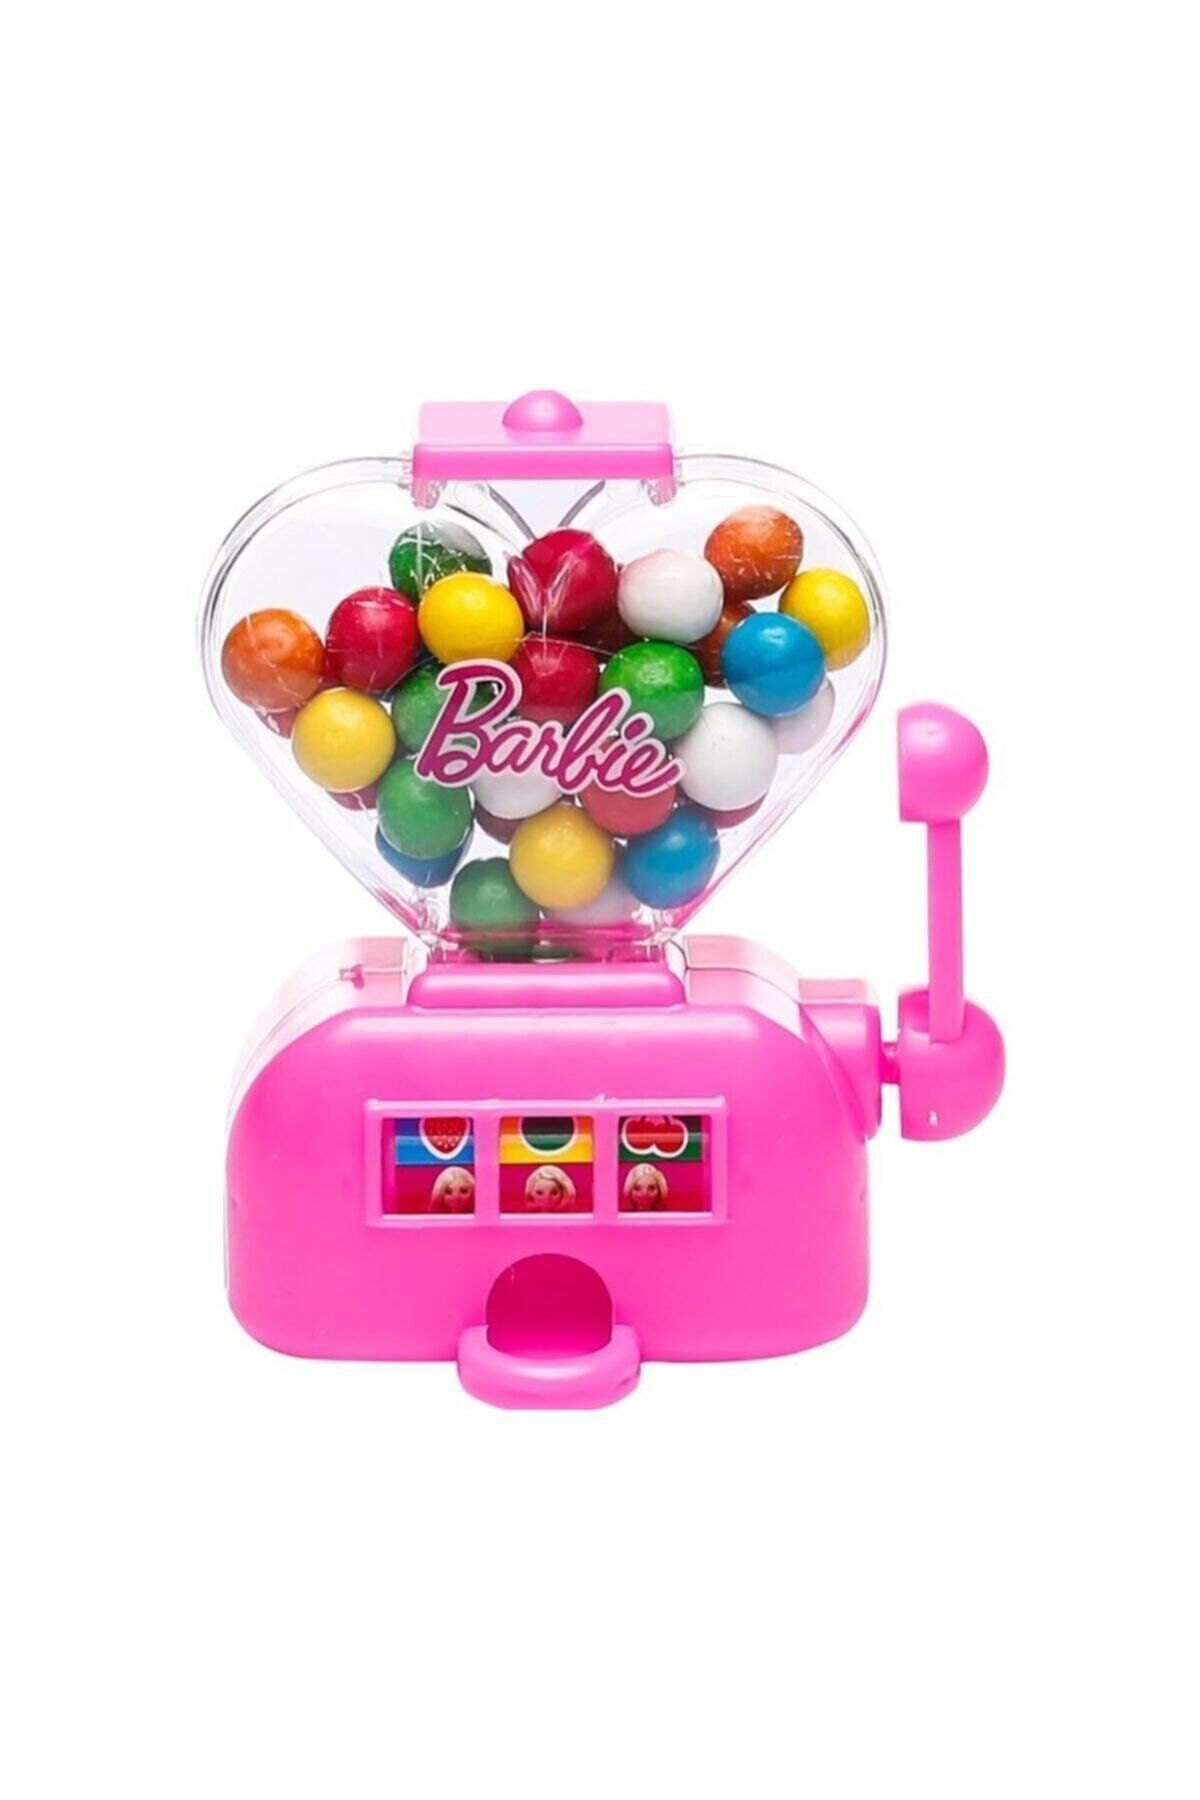 Barbie Gumball Jackpot Machine Oyuncaklı Sakız Makinası 50 g